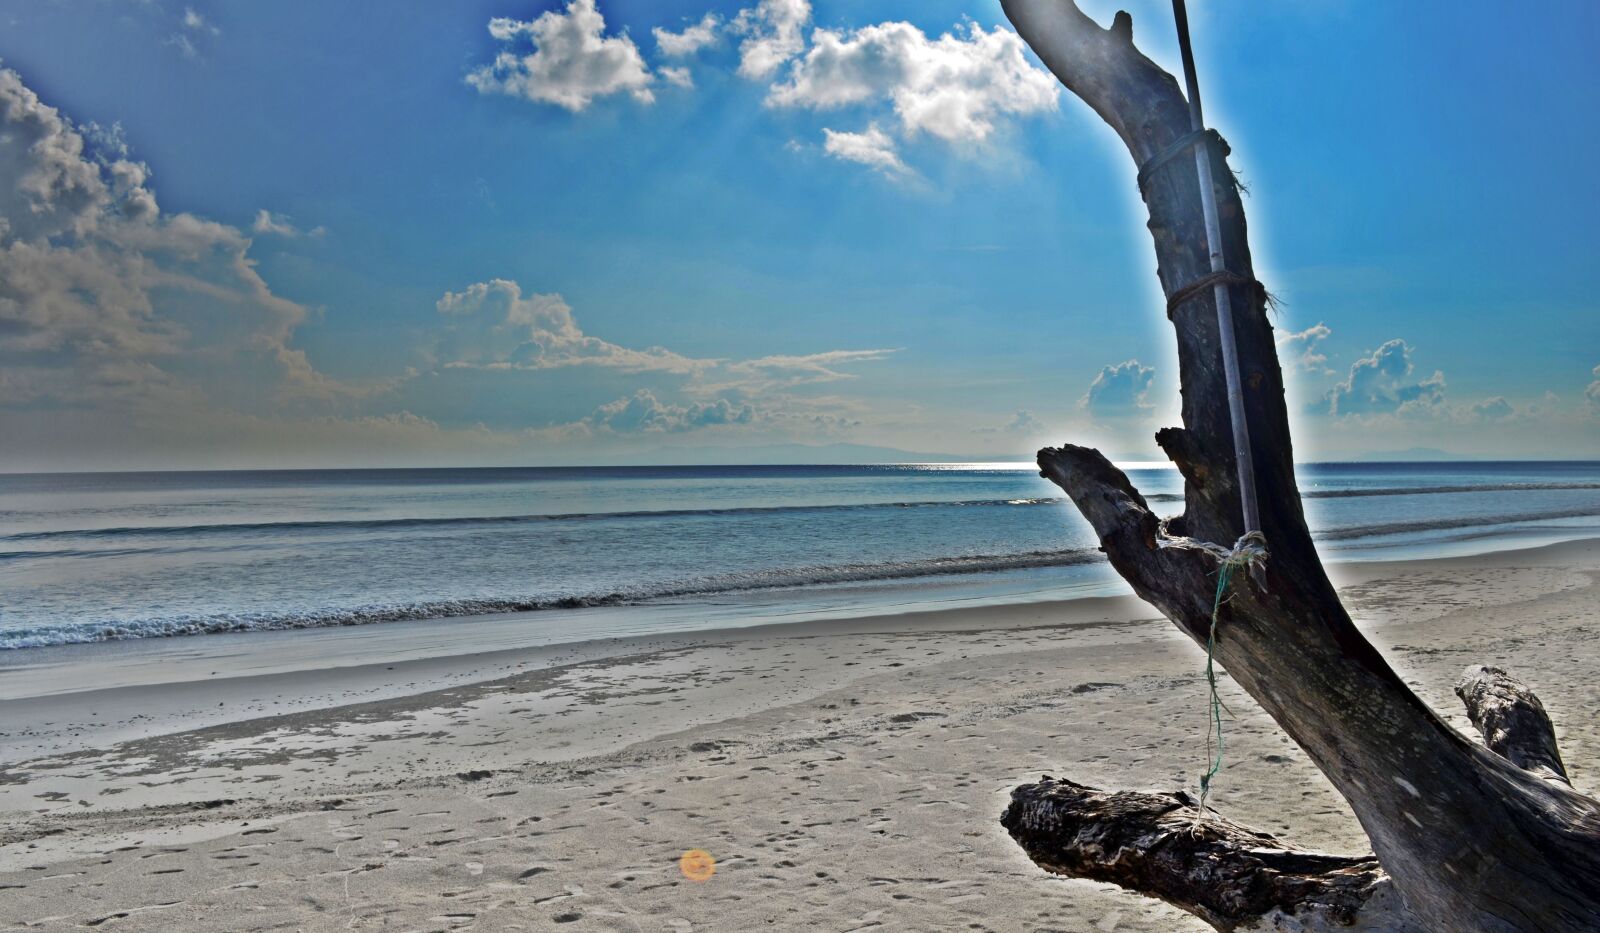 Nikon D5100 sample photo. Beach, ocean, sunrays photography